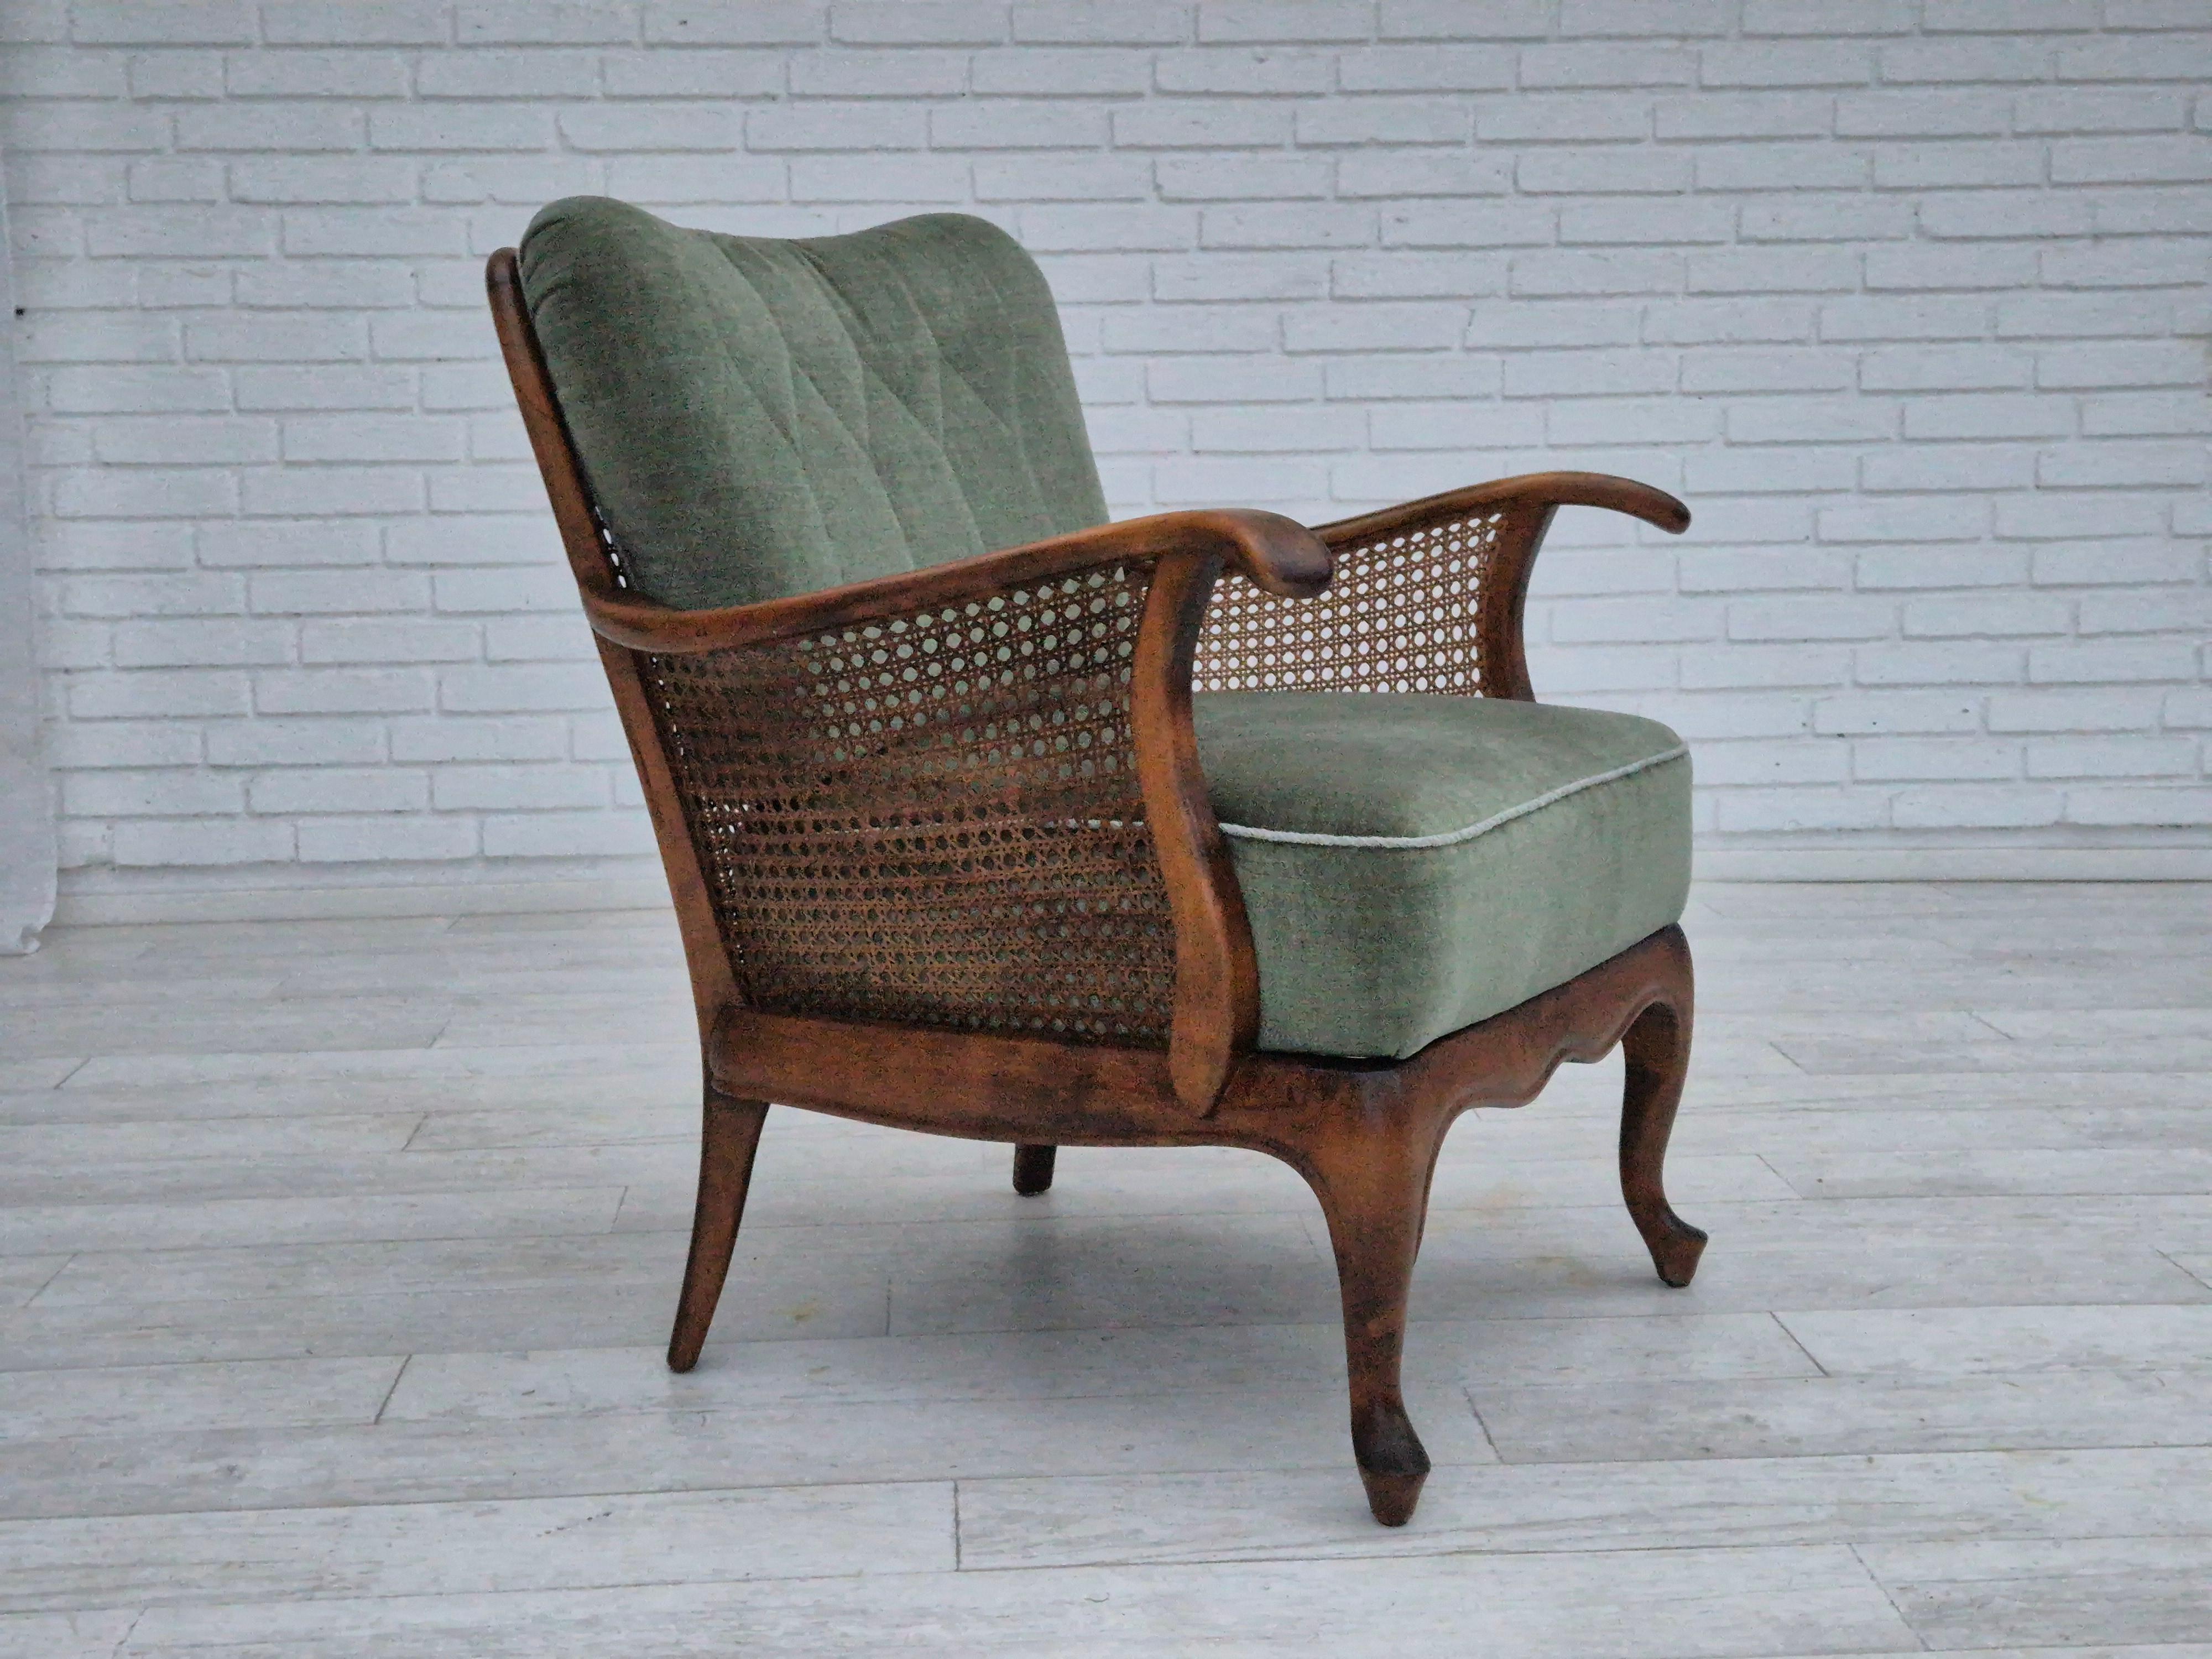 Années 1950, une paire de fauteuils danois en très bon état d'origine : pas d'odeurs ni de taches. Meubles vert clair en velours, bois de frêne, meubles en maille. Ressorts dans les coussins d'assise. Fabriqué par un fabricant de meubles danois dans